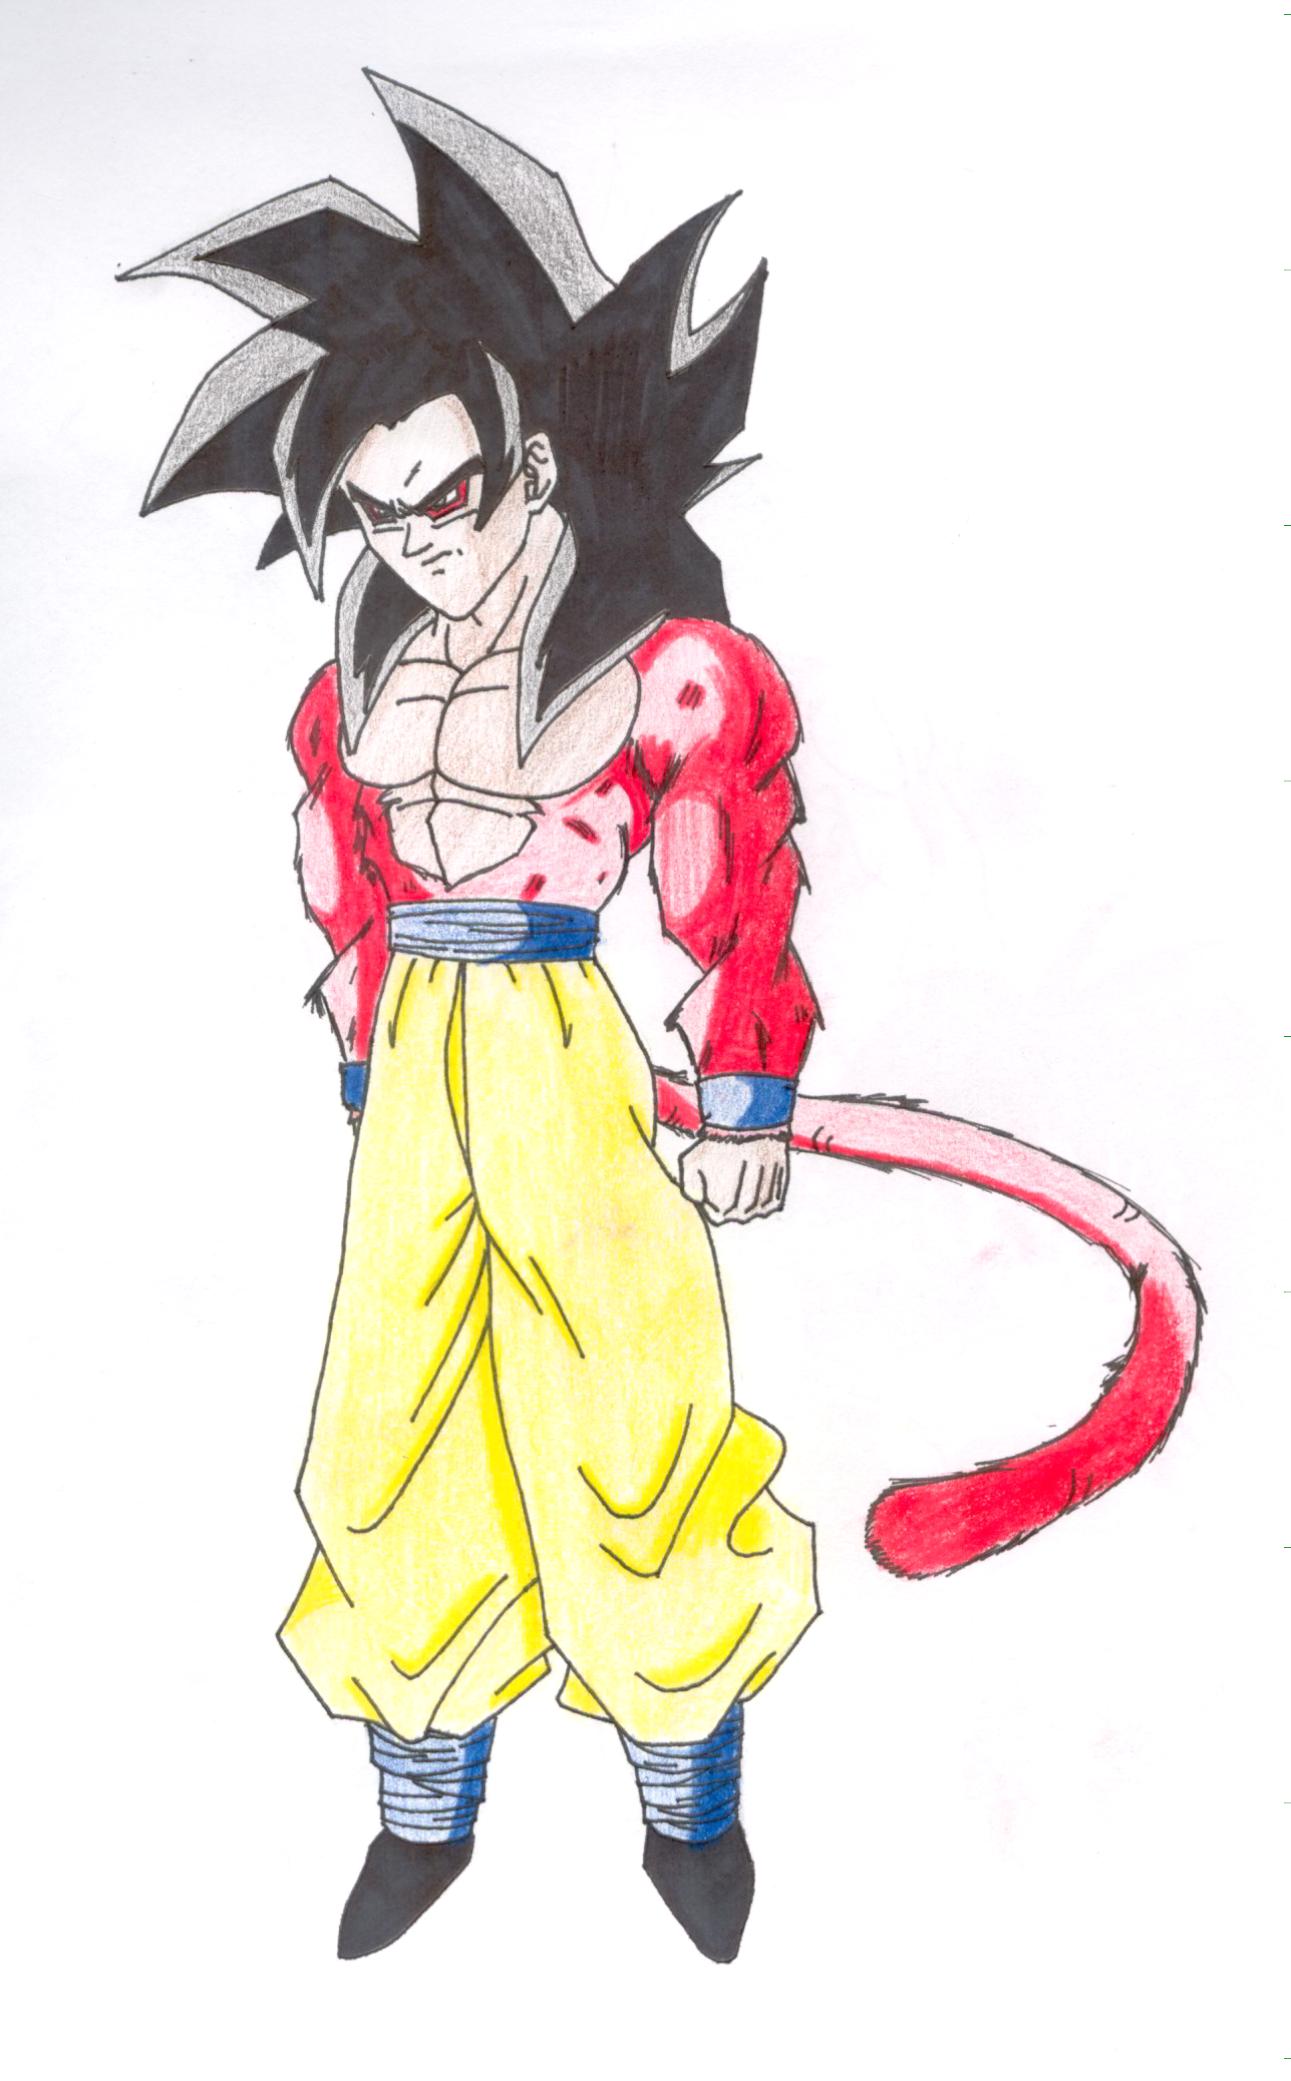 SSJ4 Goku in Technicolor by Joker216